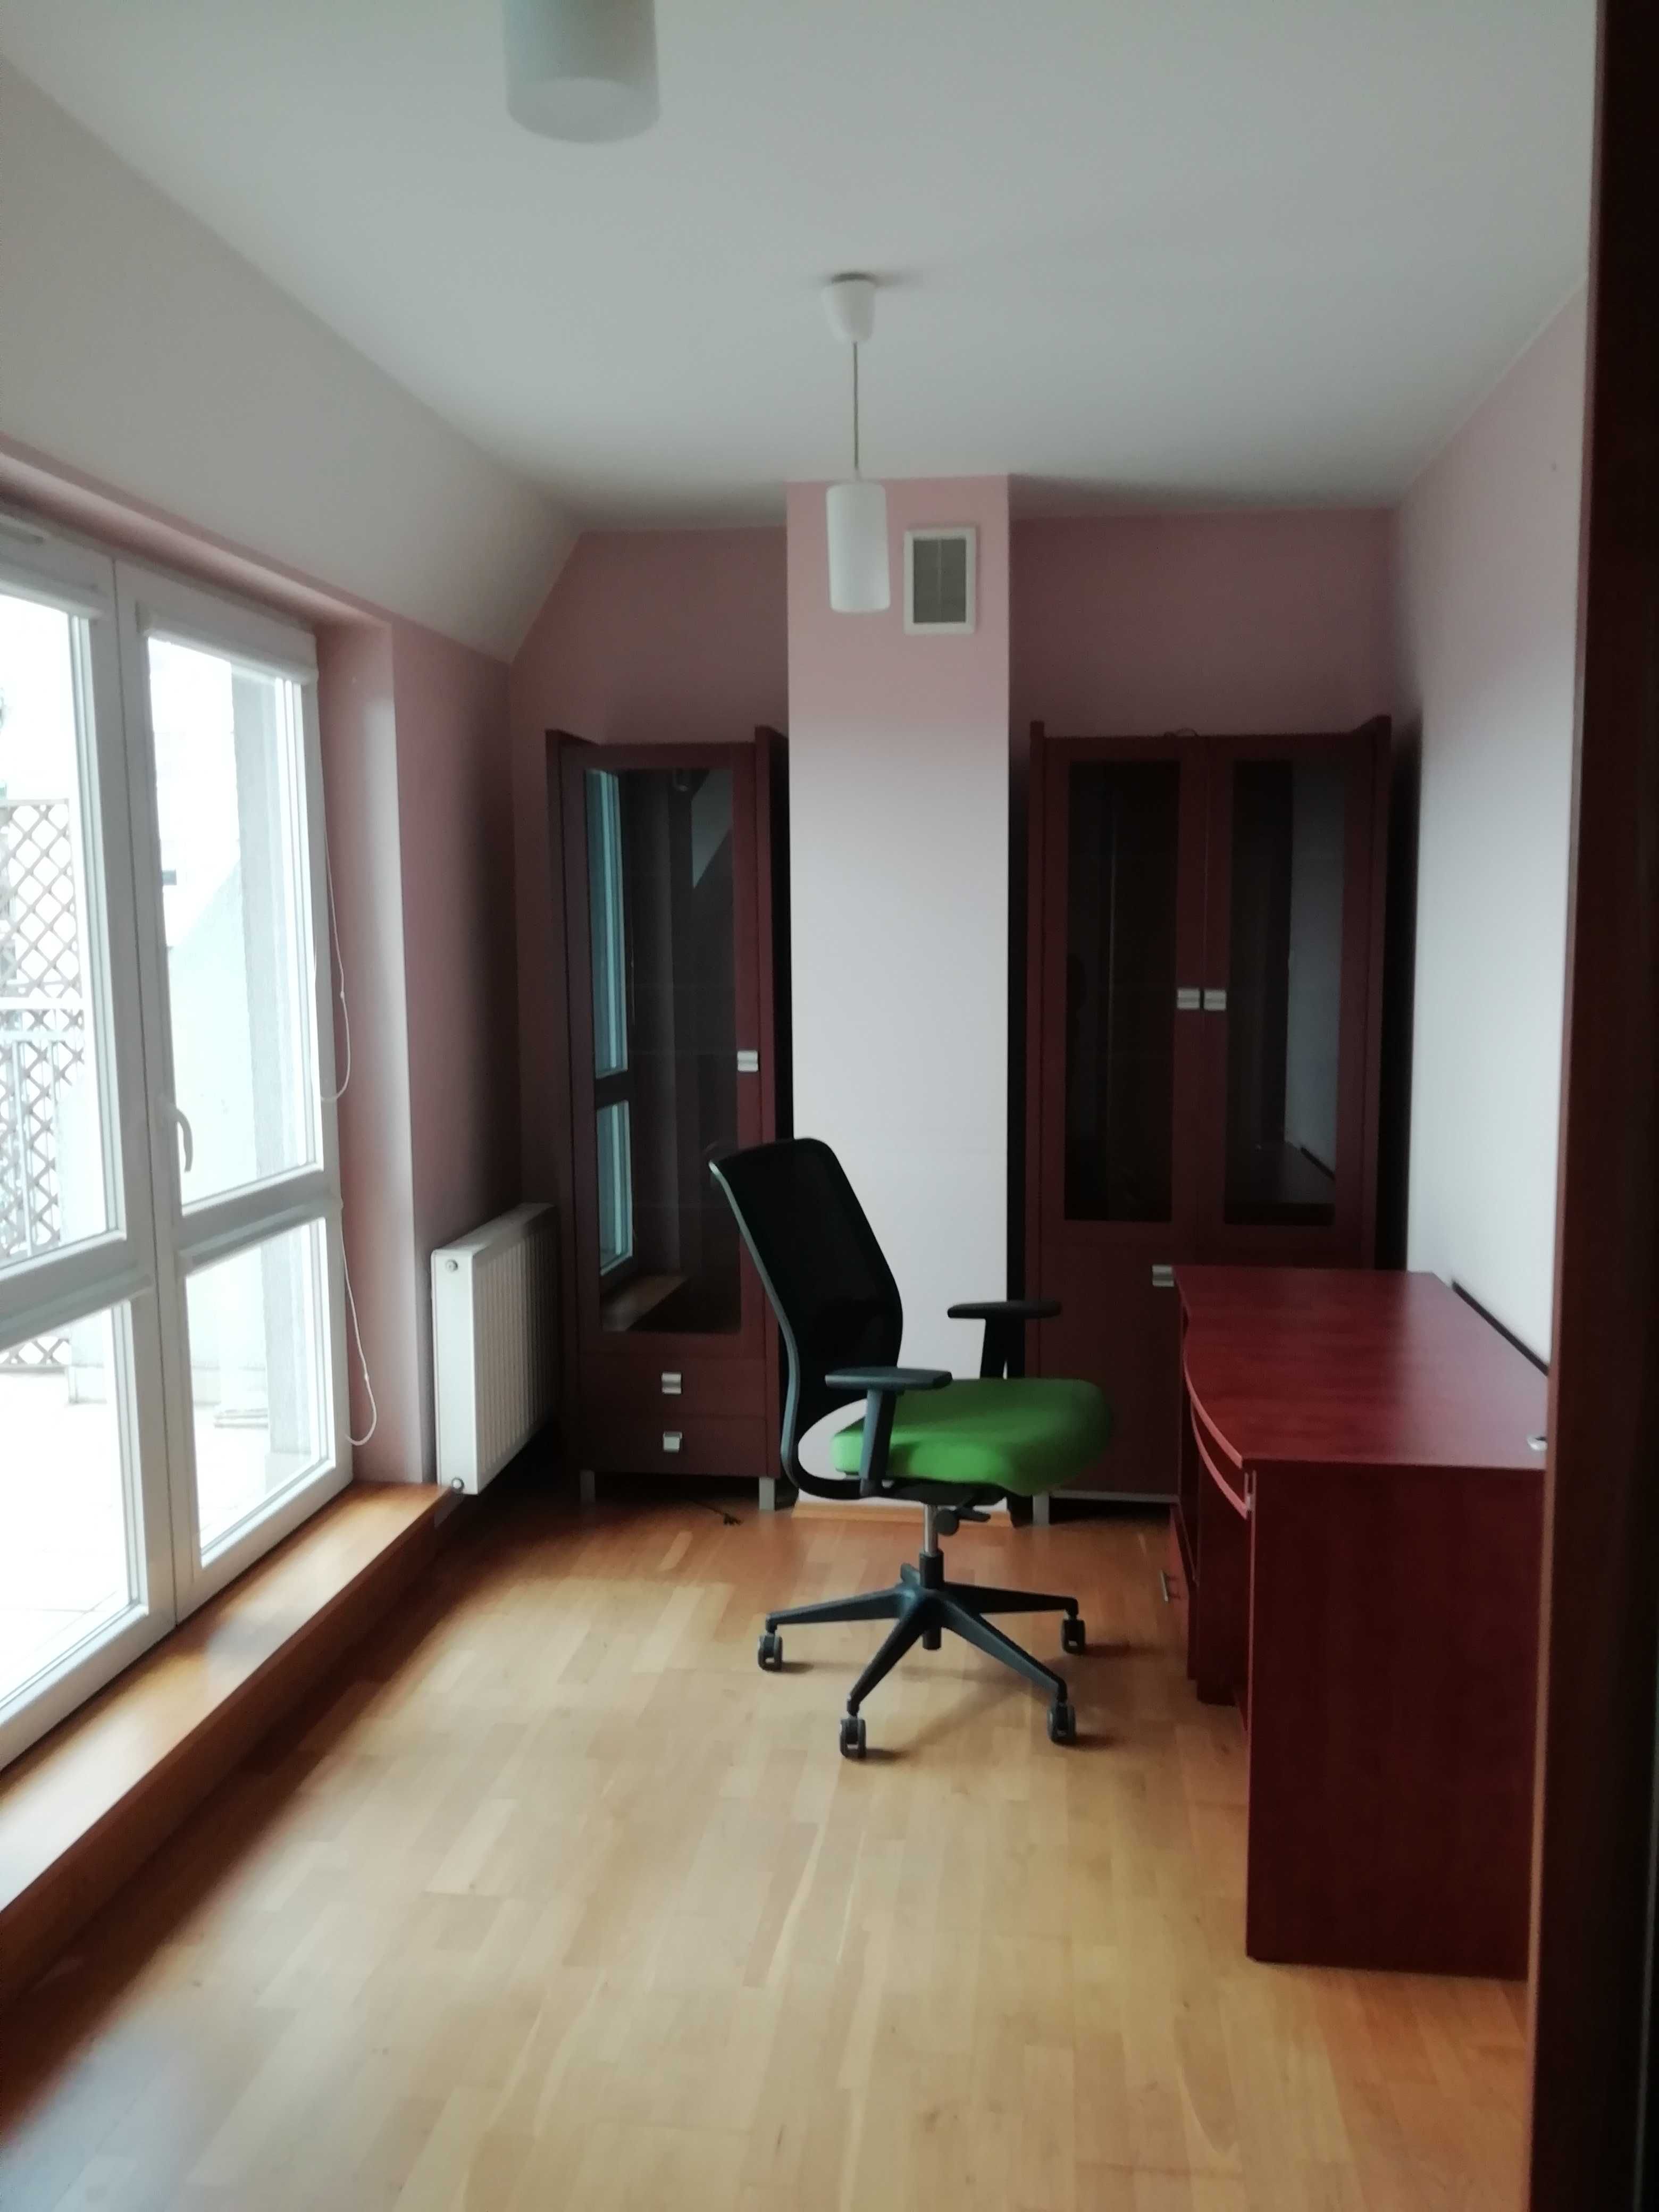 Dwupoziomowe 55 m2 do wynajęcia na Gajowicach; dwa balkony + garaż!